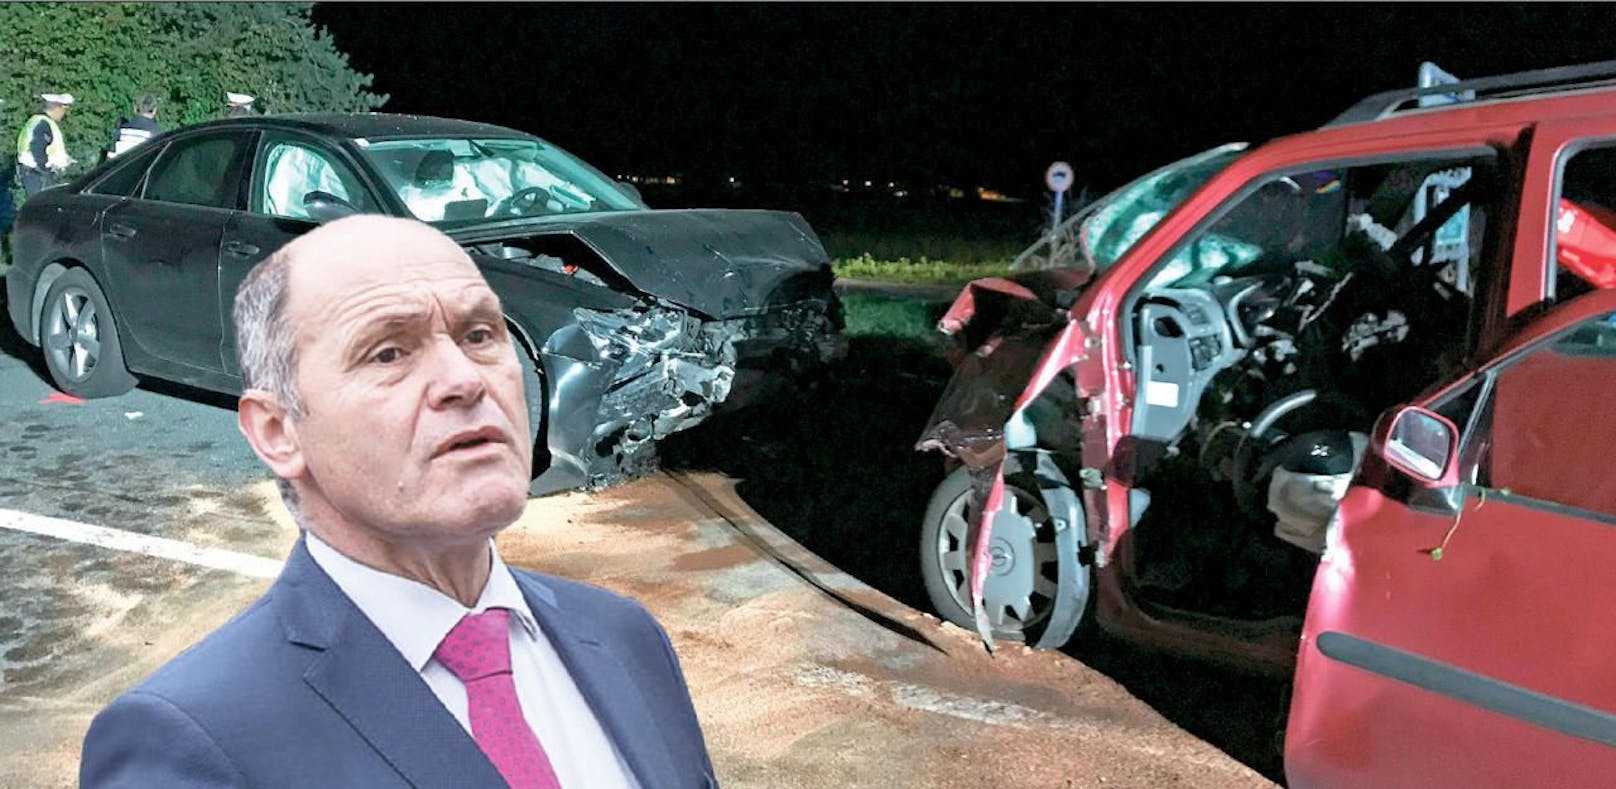 Innenminister Sobotka in schweren Unfall verwickelt - Bub (9) in künstlichem Tiefschlaf